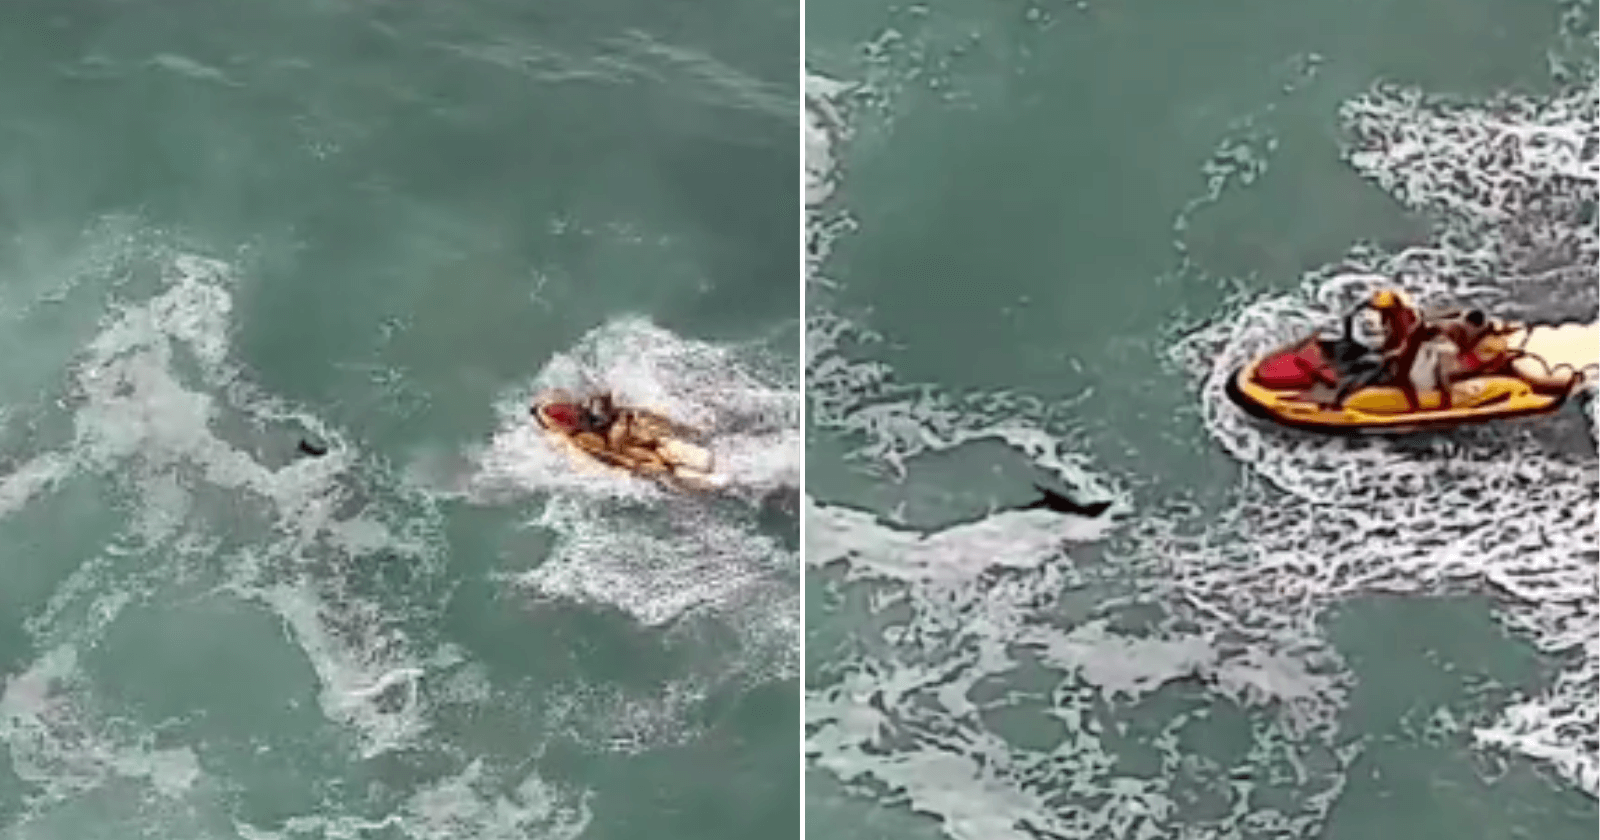 Equipe de resgate salva cachorro que se afogava no mar